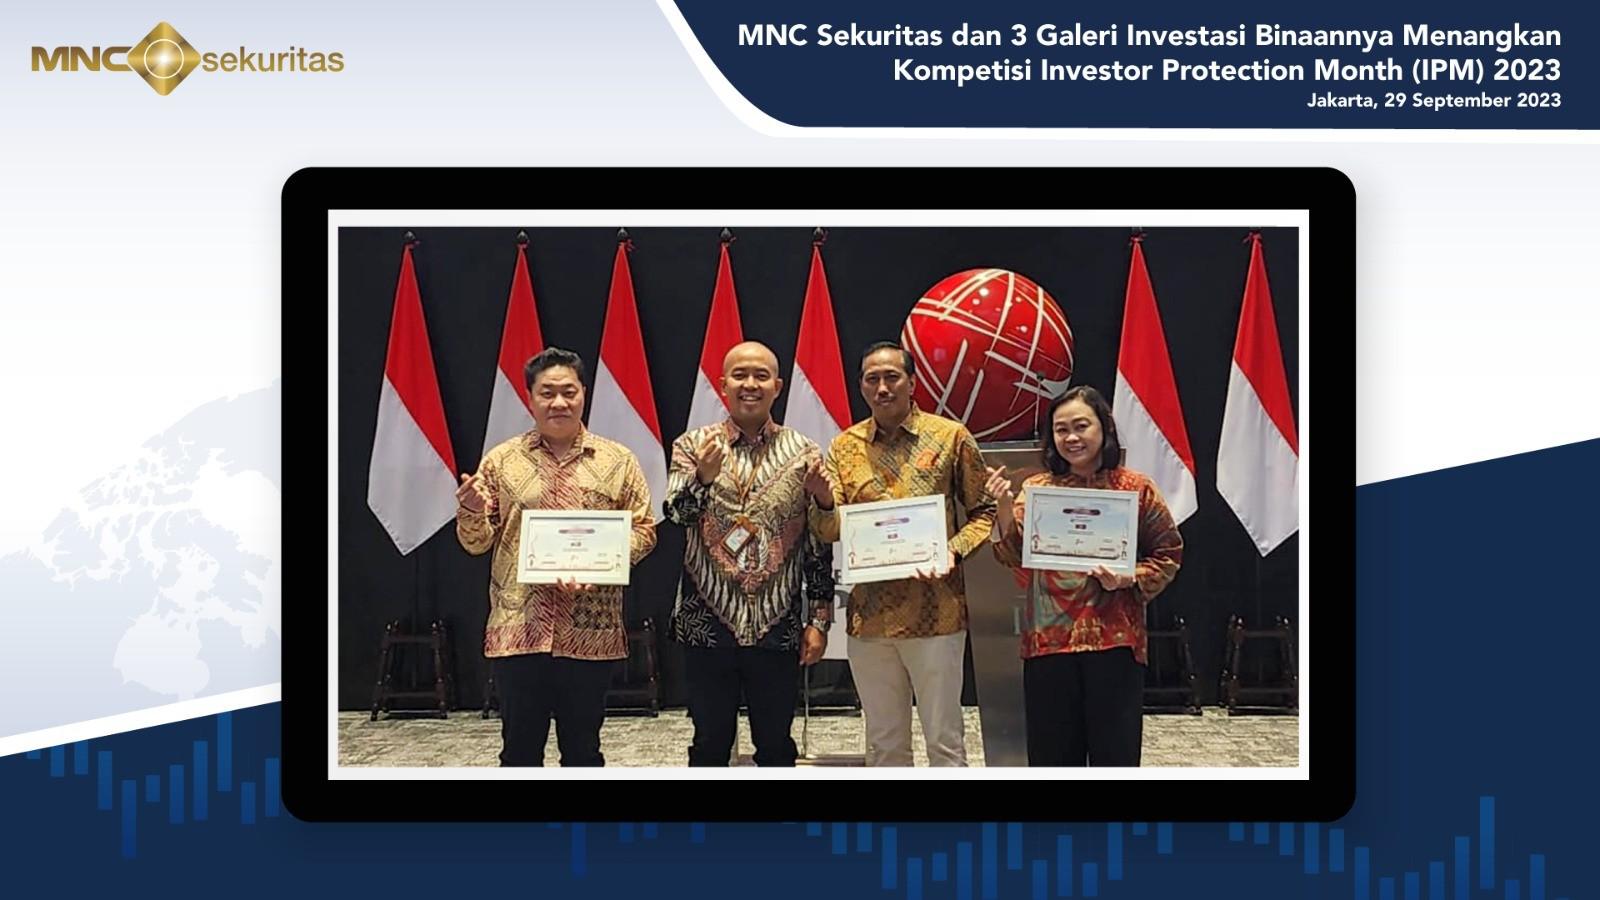 MNC Sekuritas Borong Juara Kompetisi Investor Protection Month 2023